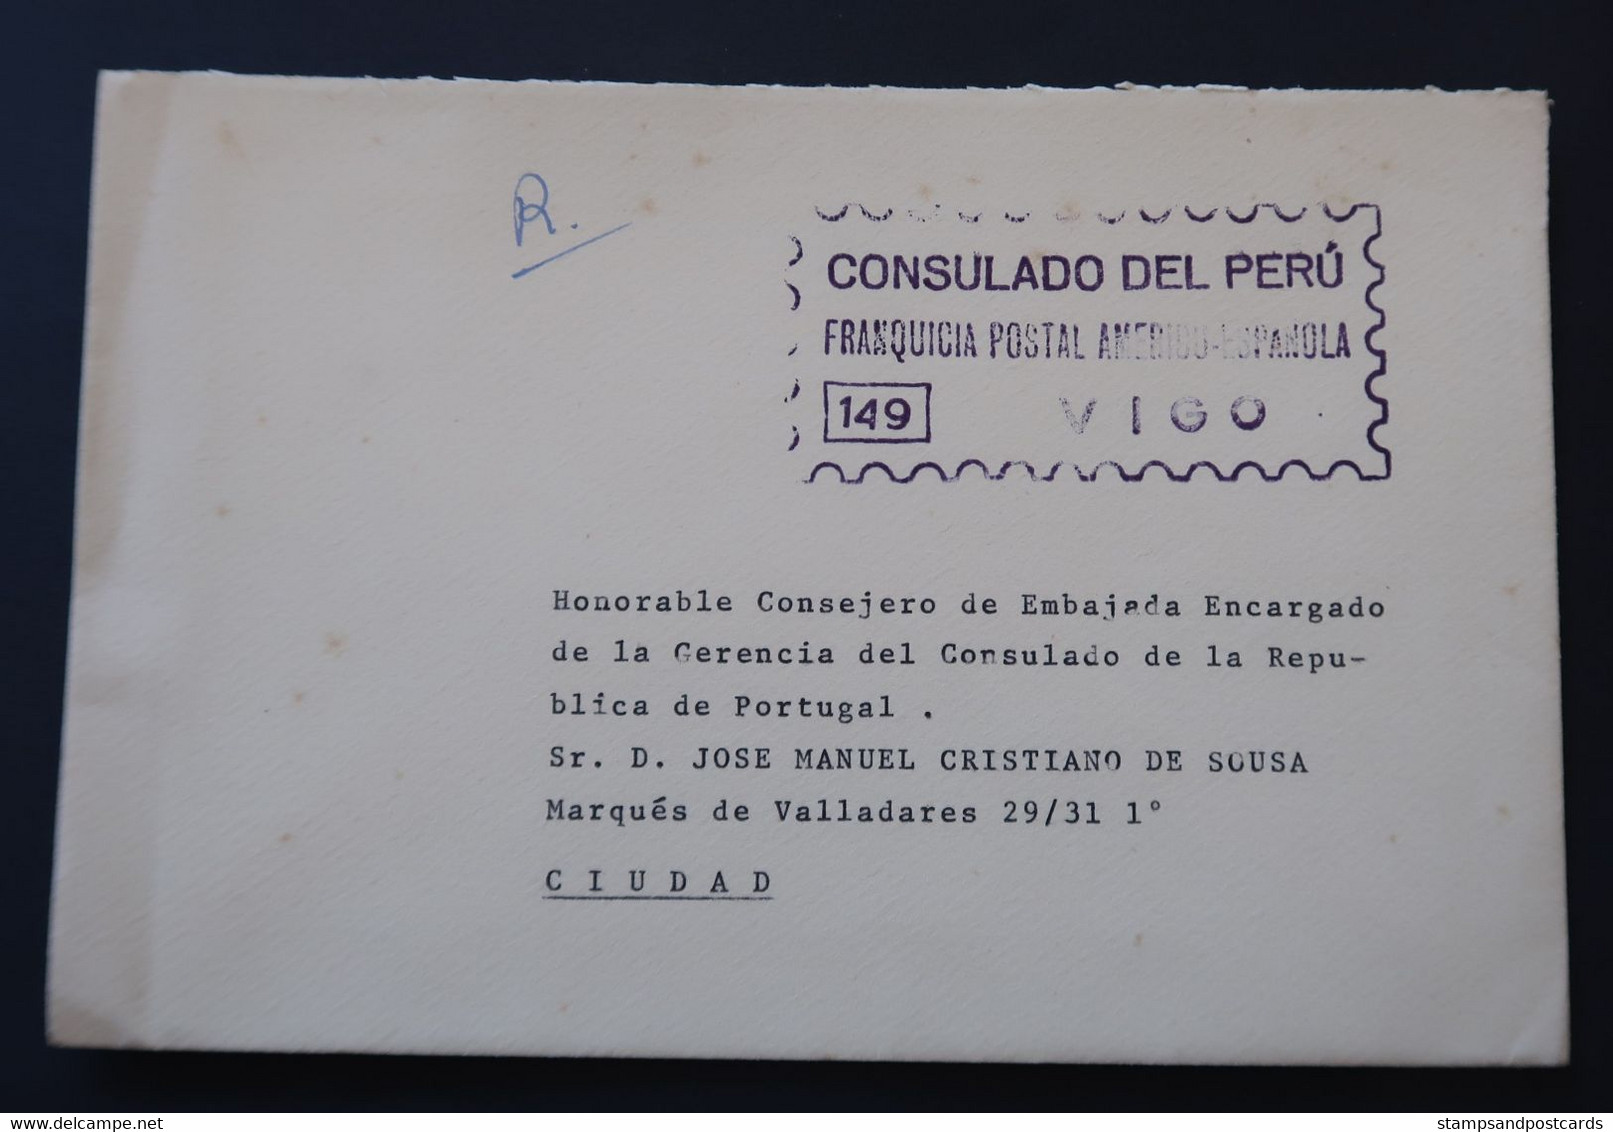 Espagne 1970 Lettre Franchise Postal Vigo Consulat Perú España Franquicia Consulado Peru Official Paid Spain - Franchise Postale